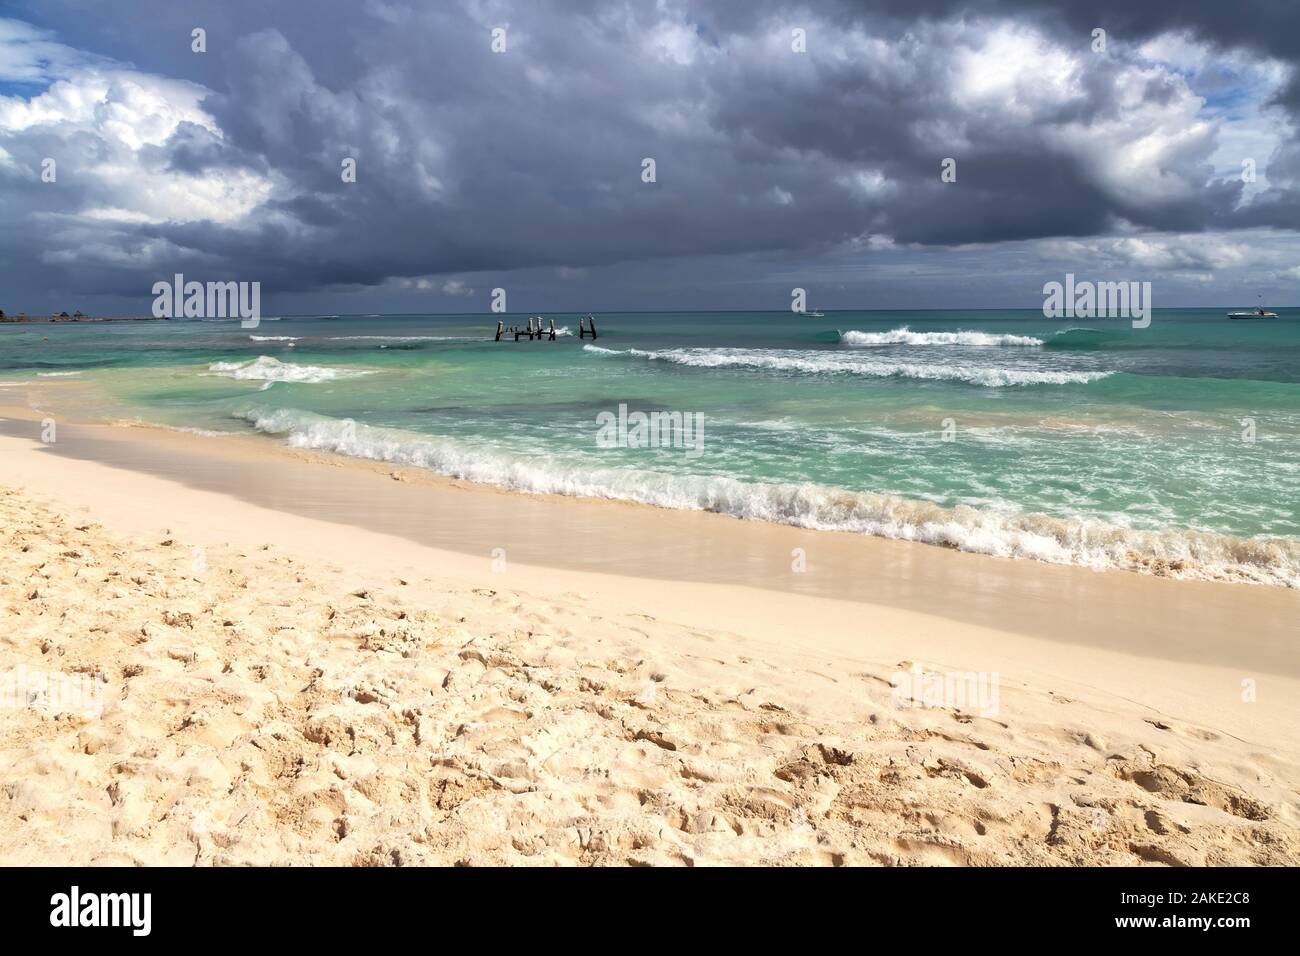 De sombres nuages se forment au-dessus de la mer avec des vagues se brisant la plage que les approches. Banque D'Images